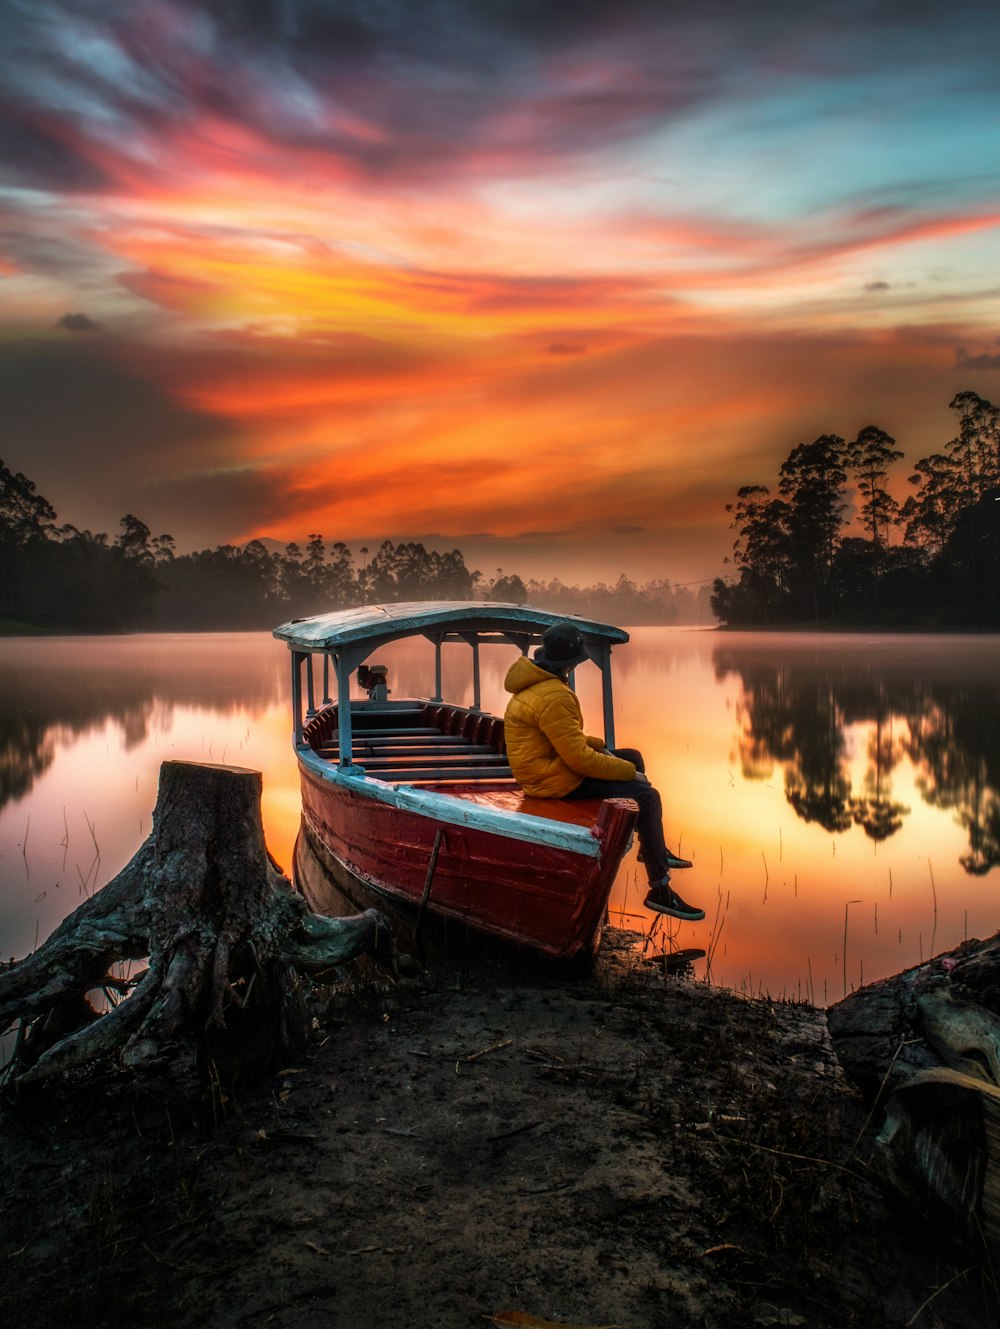 Mann im roten Hemd sitzt bei Sonnenuntergang auf dem Boot